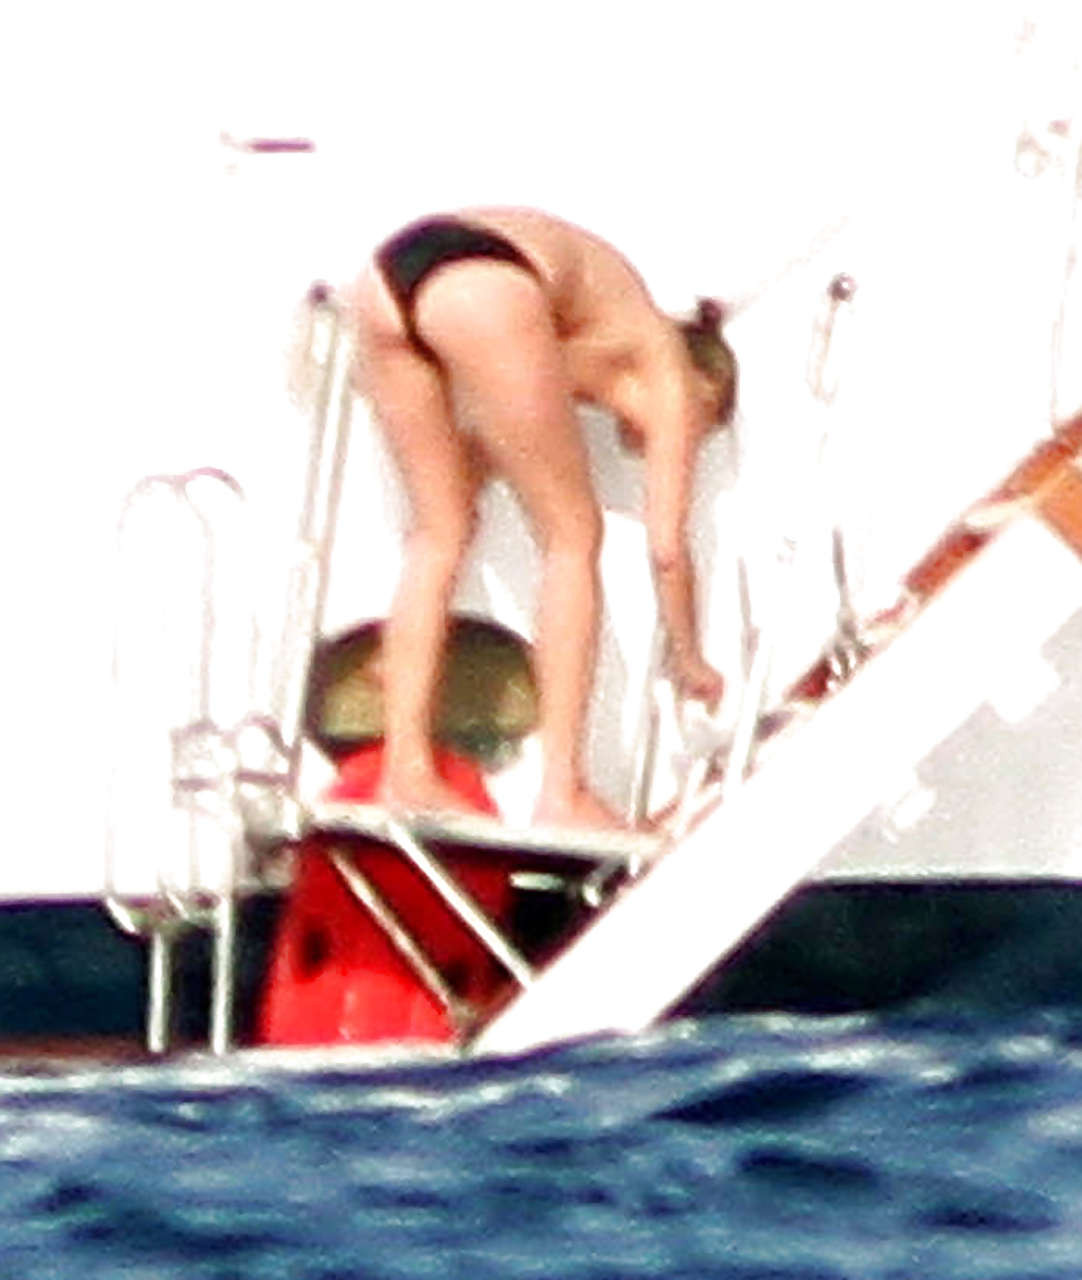 Kate Moss, seins nus, sautant d'un yacht et montrant sa culotte, photographiée par des paparazzis.
 #75290687